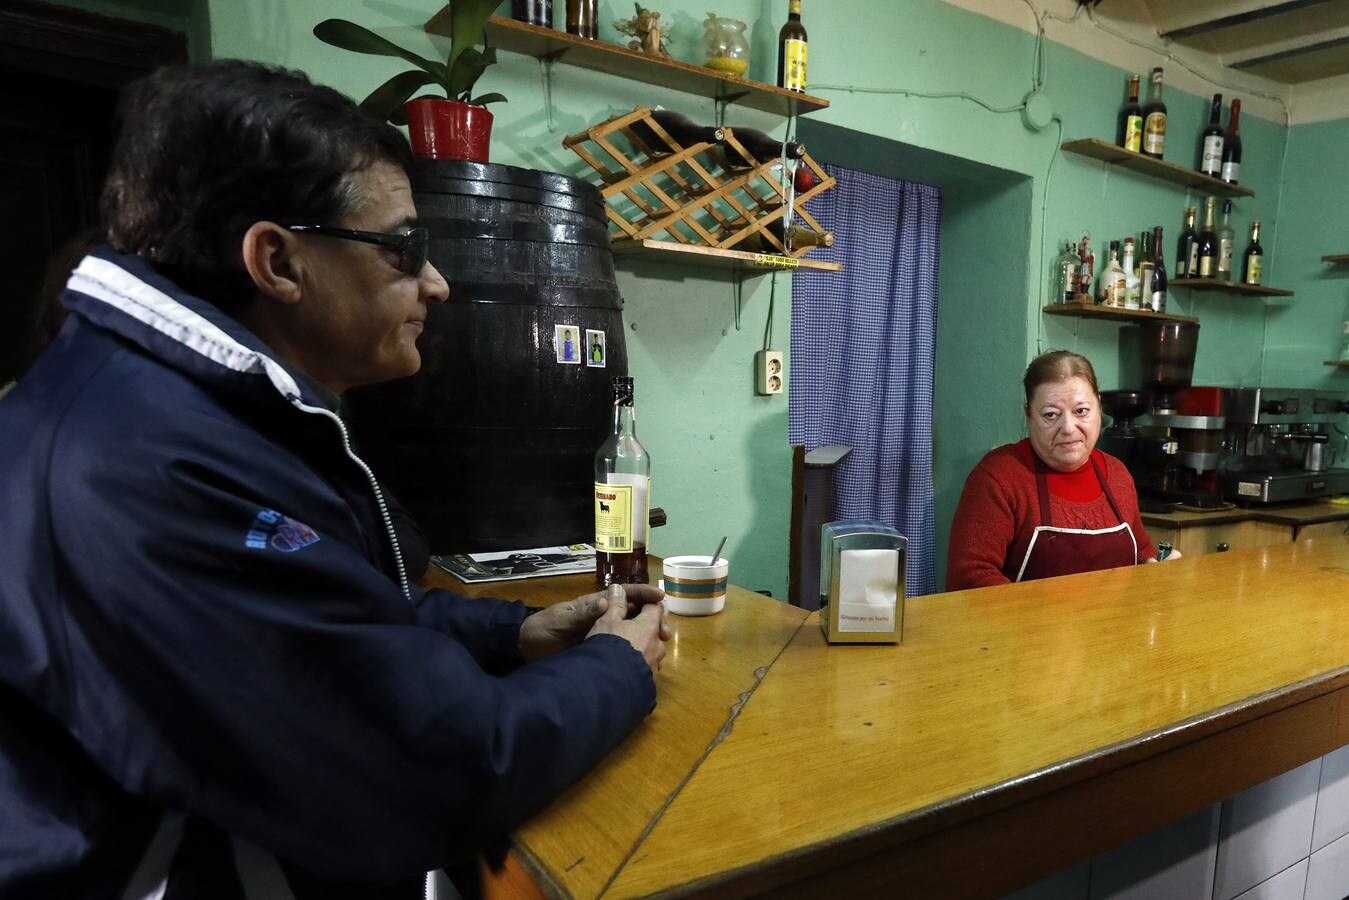 Una vecina de Las Torres de Cotillas pierde su vivienda y su bar por una deuda que su exmarido contrajo hace 30 años con un prestamista